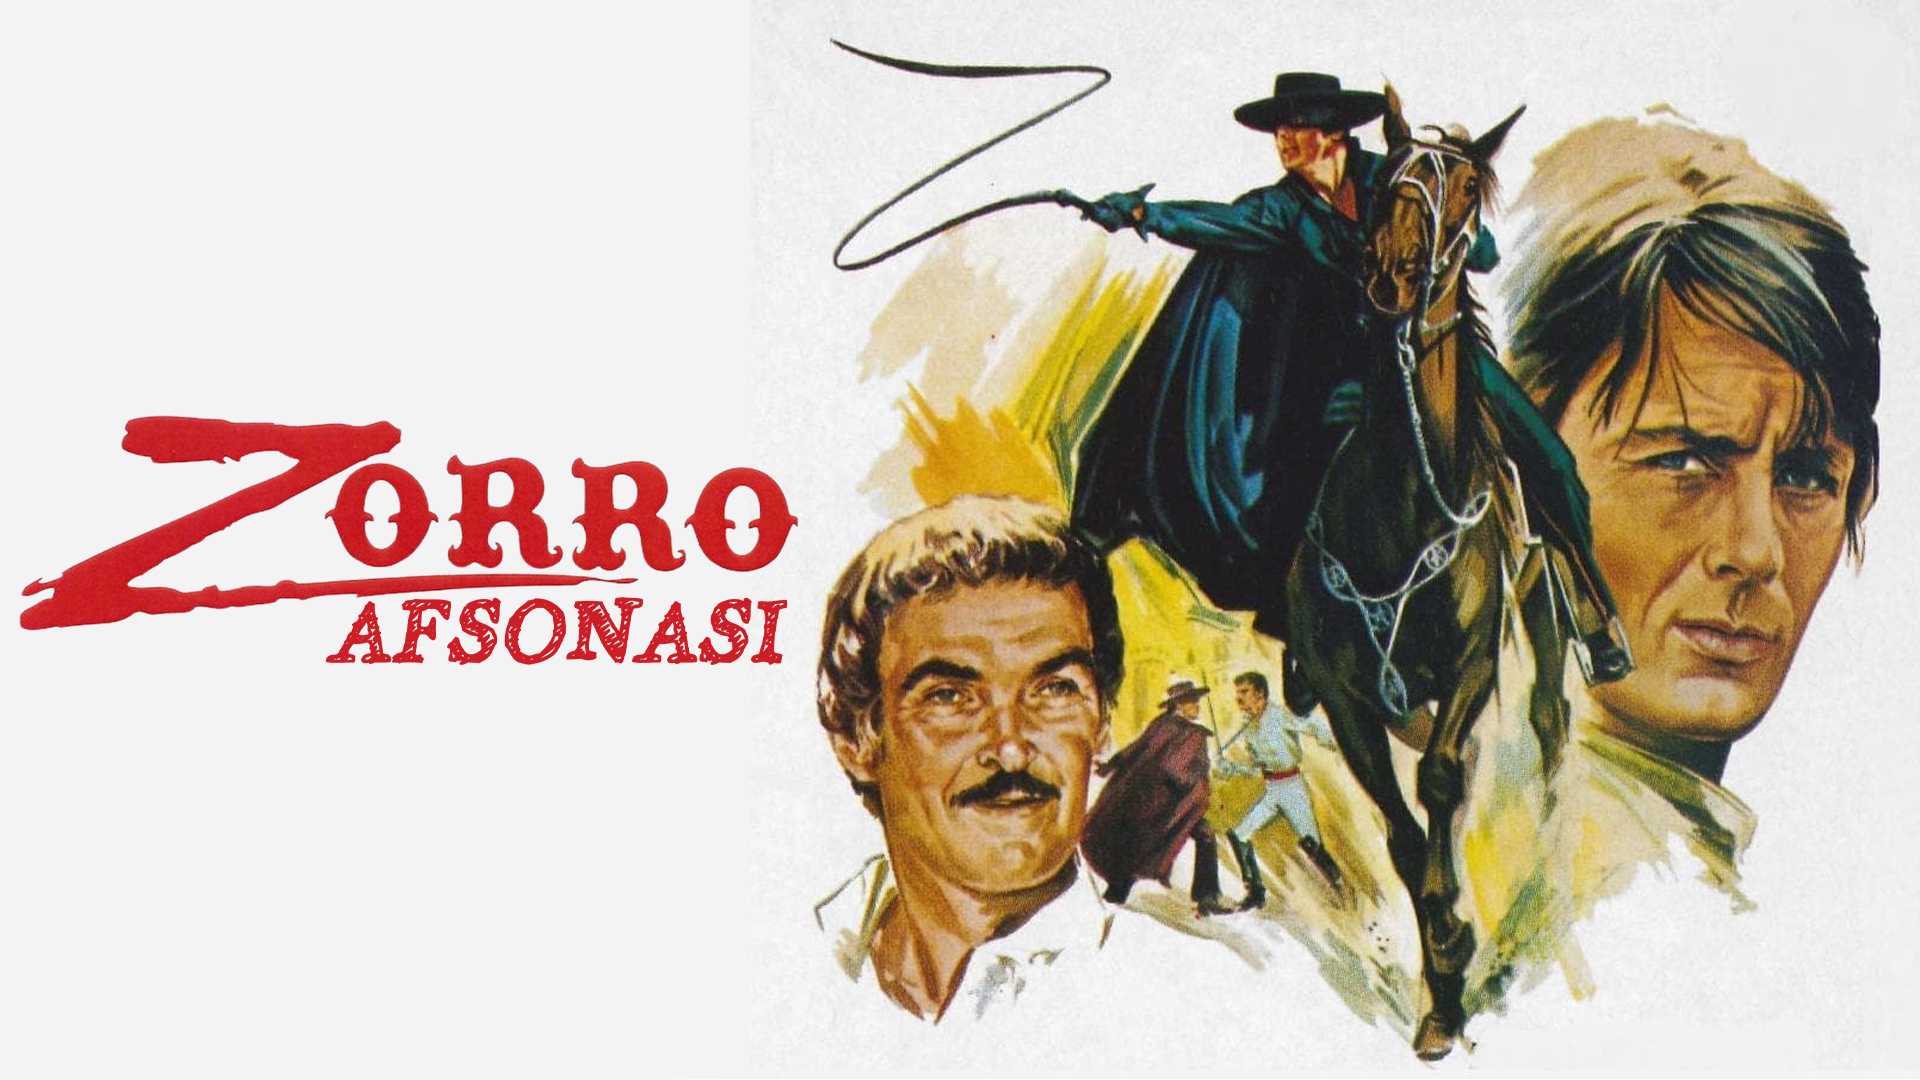 Zorro afsonasi